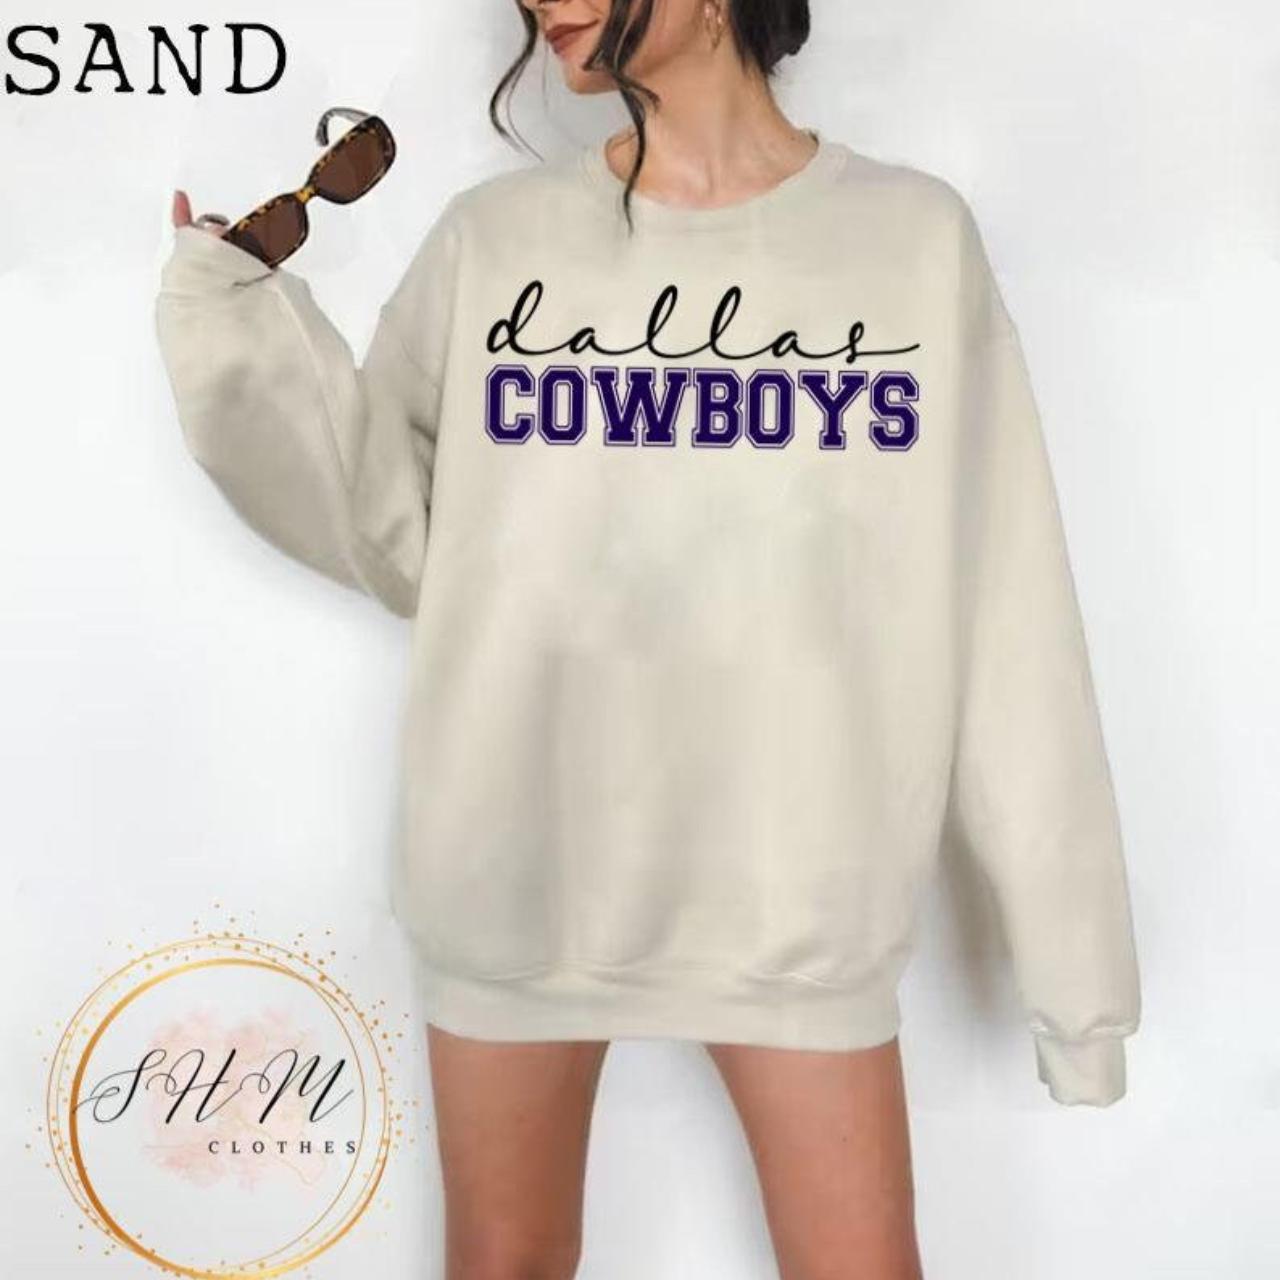 Vintage Dallas Cowboy Football Crewneck Sweatshirt  - Depop